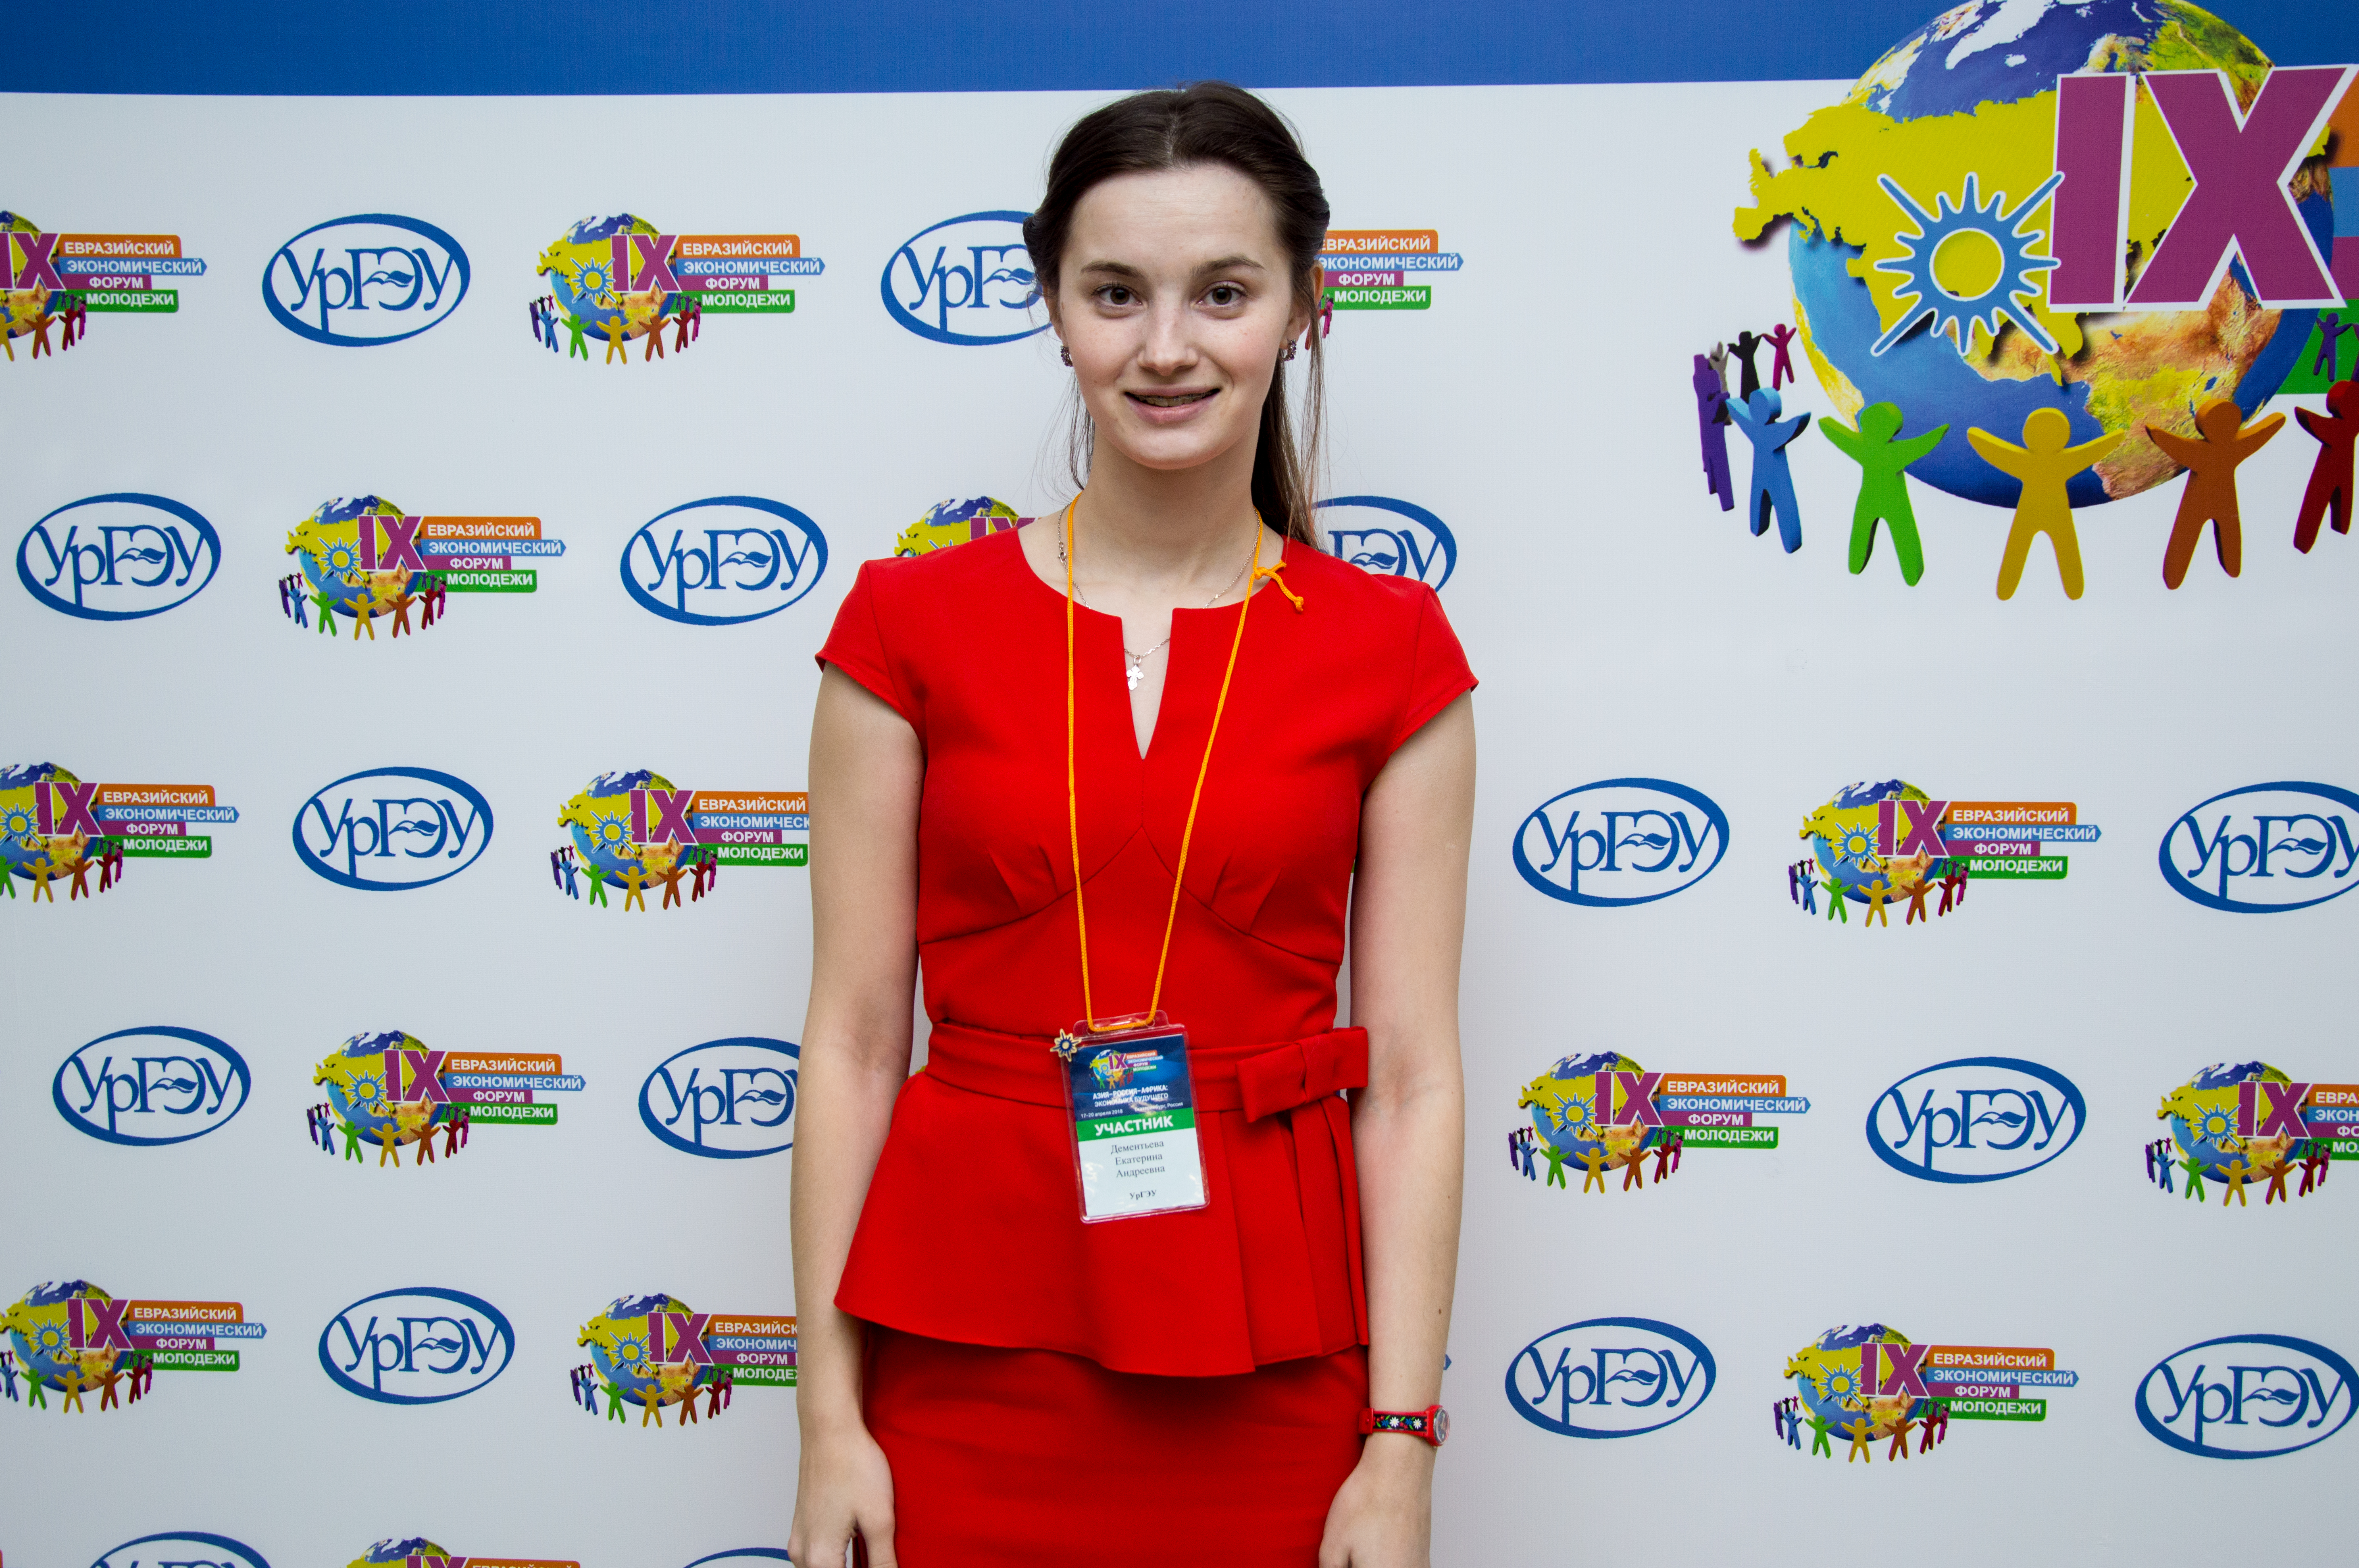 Super jb forum. Евразийская девушка. Евразийский Союз молодёжи. ЕЭФ.